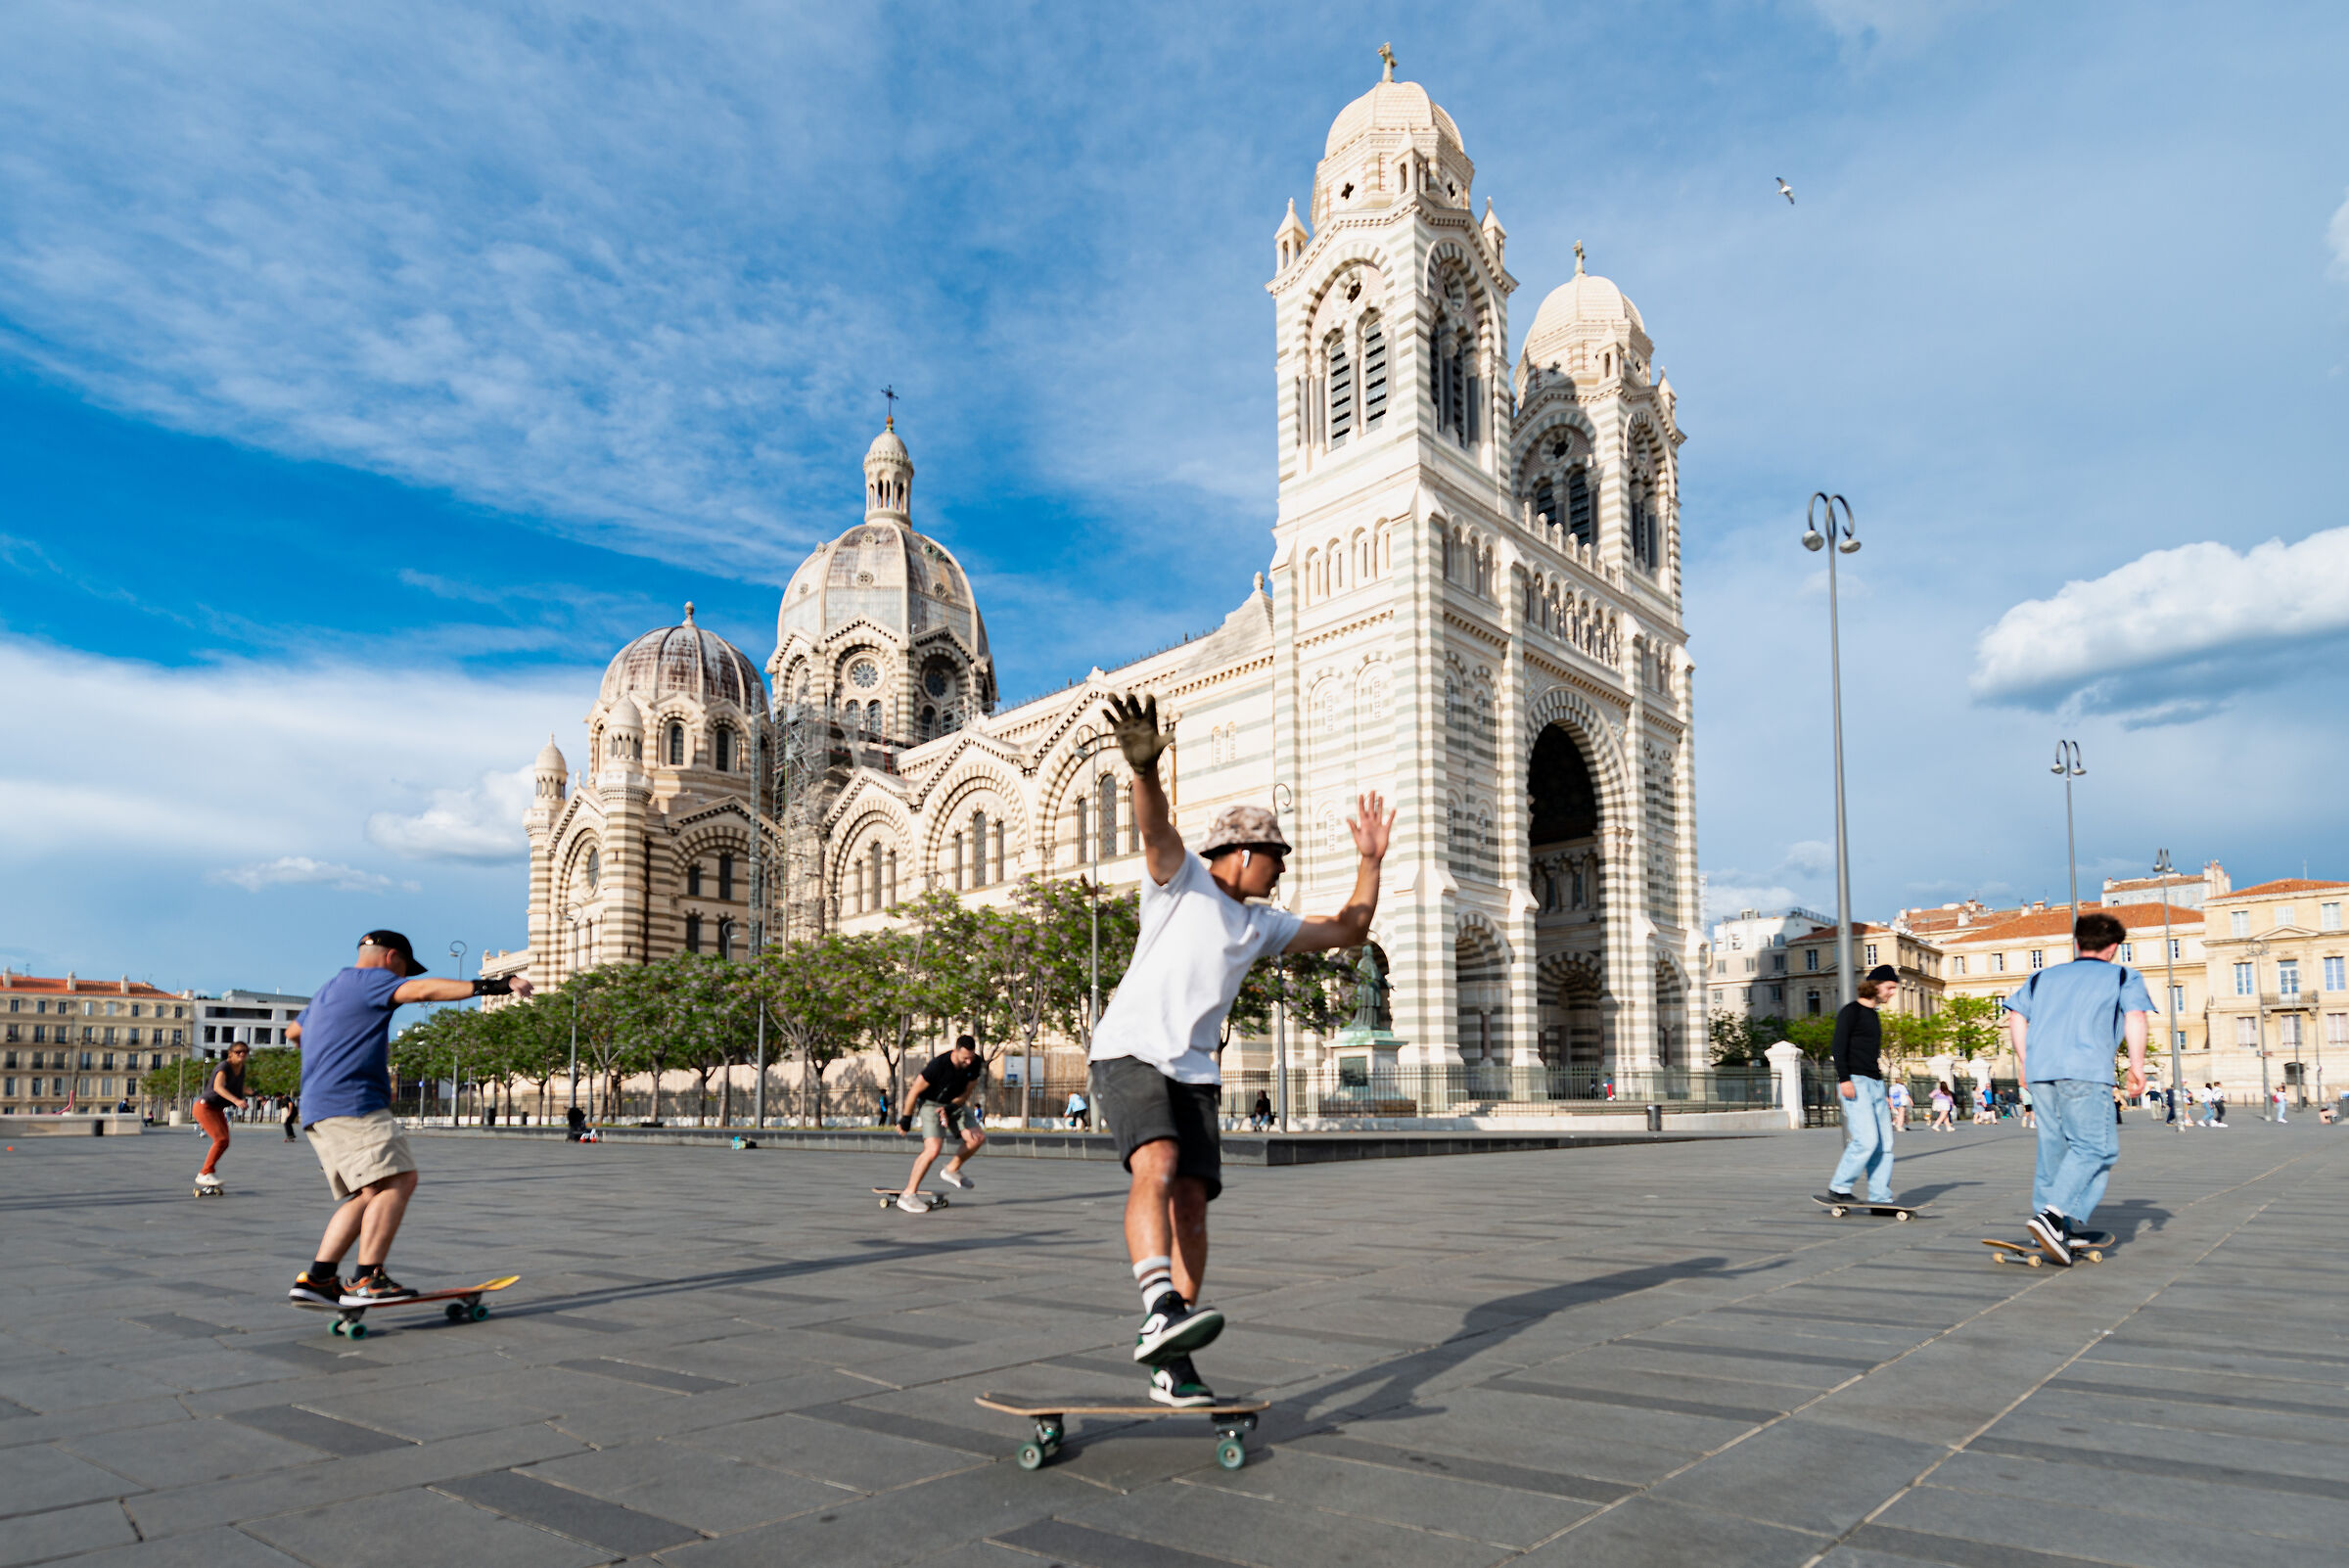 Skate on Marseille...